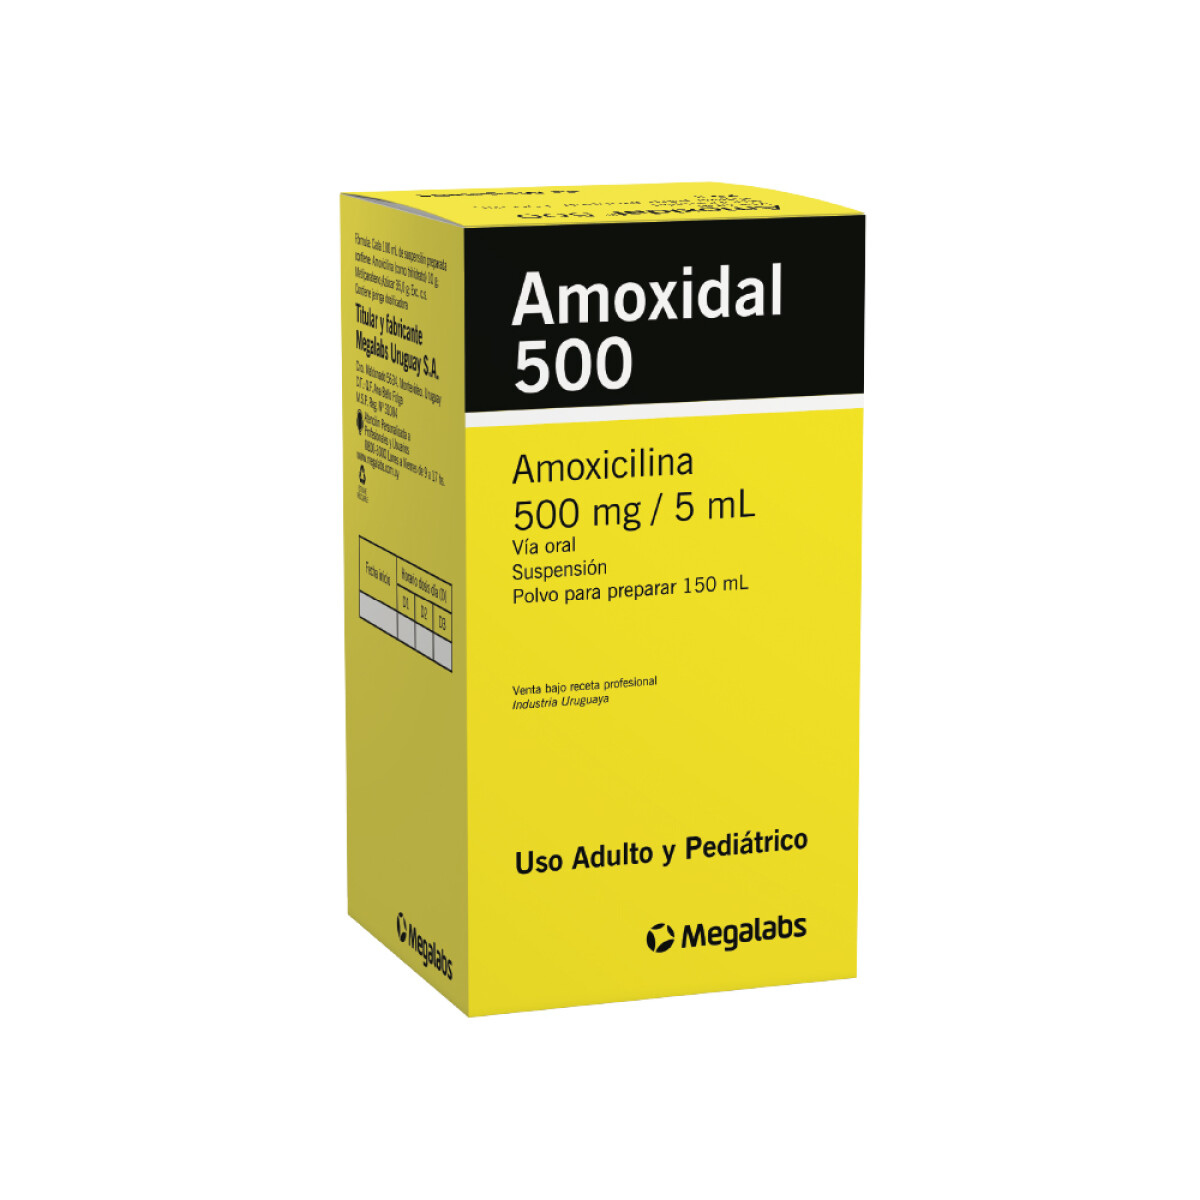 AMOXIDAL 500 MG SUSP 150 ML 